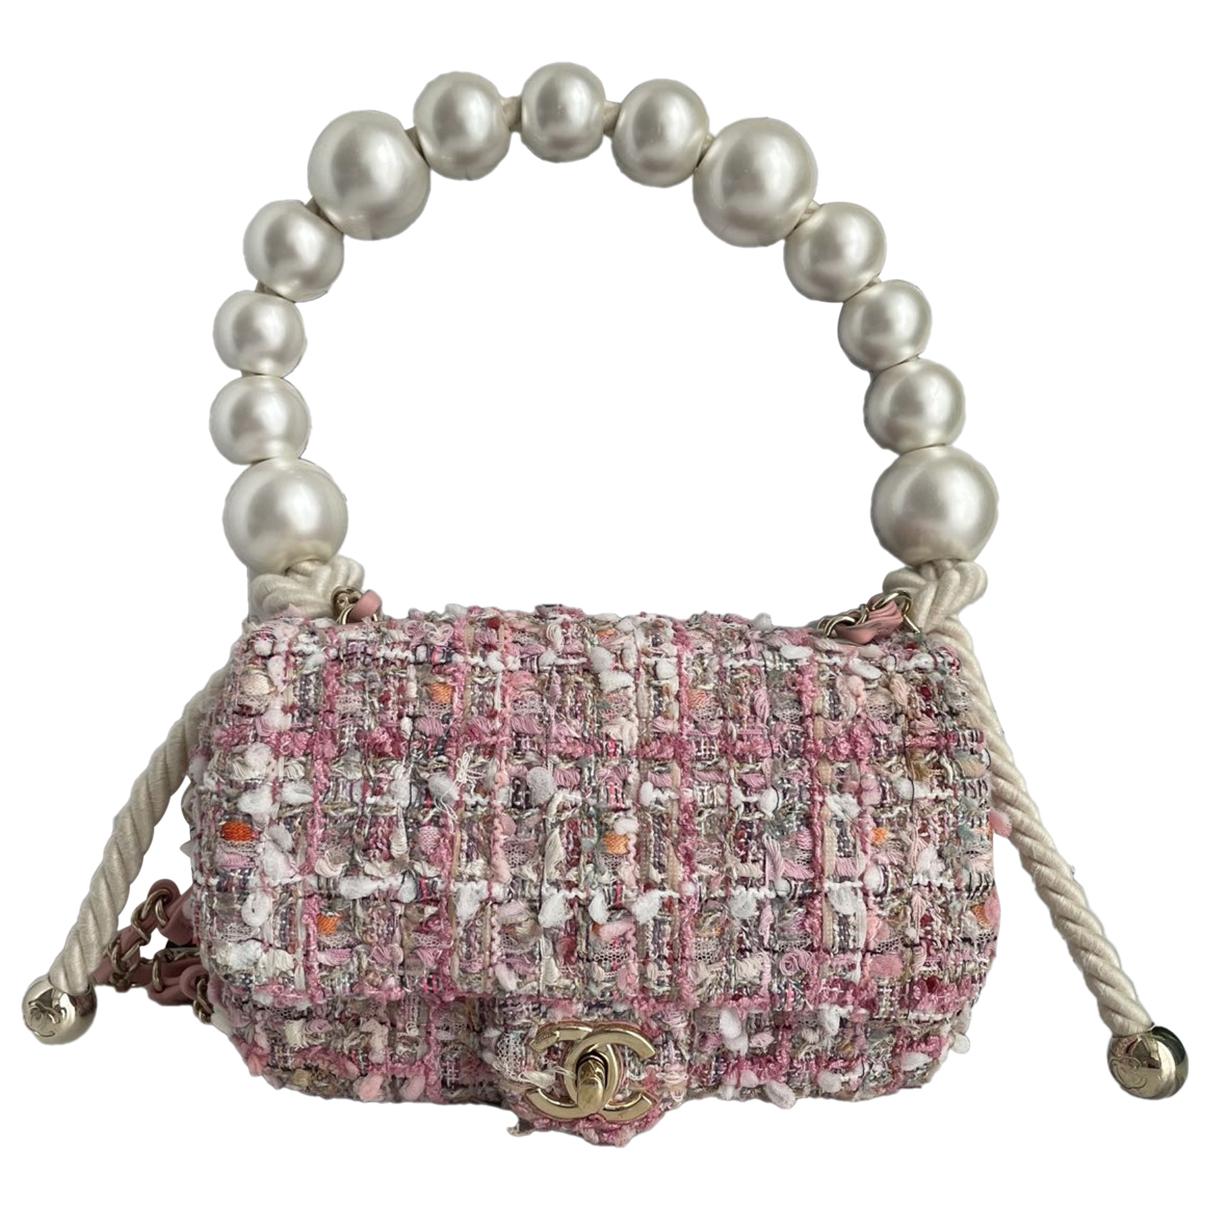 Timeless/classique tweed handbag Chanel Pink in Tweed - 37126517